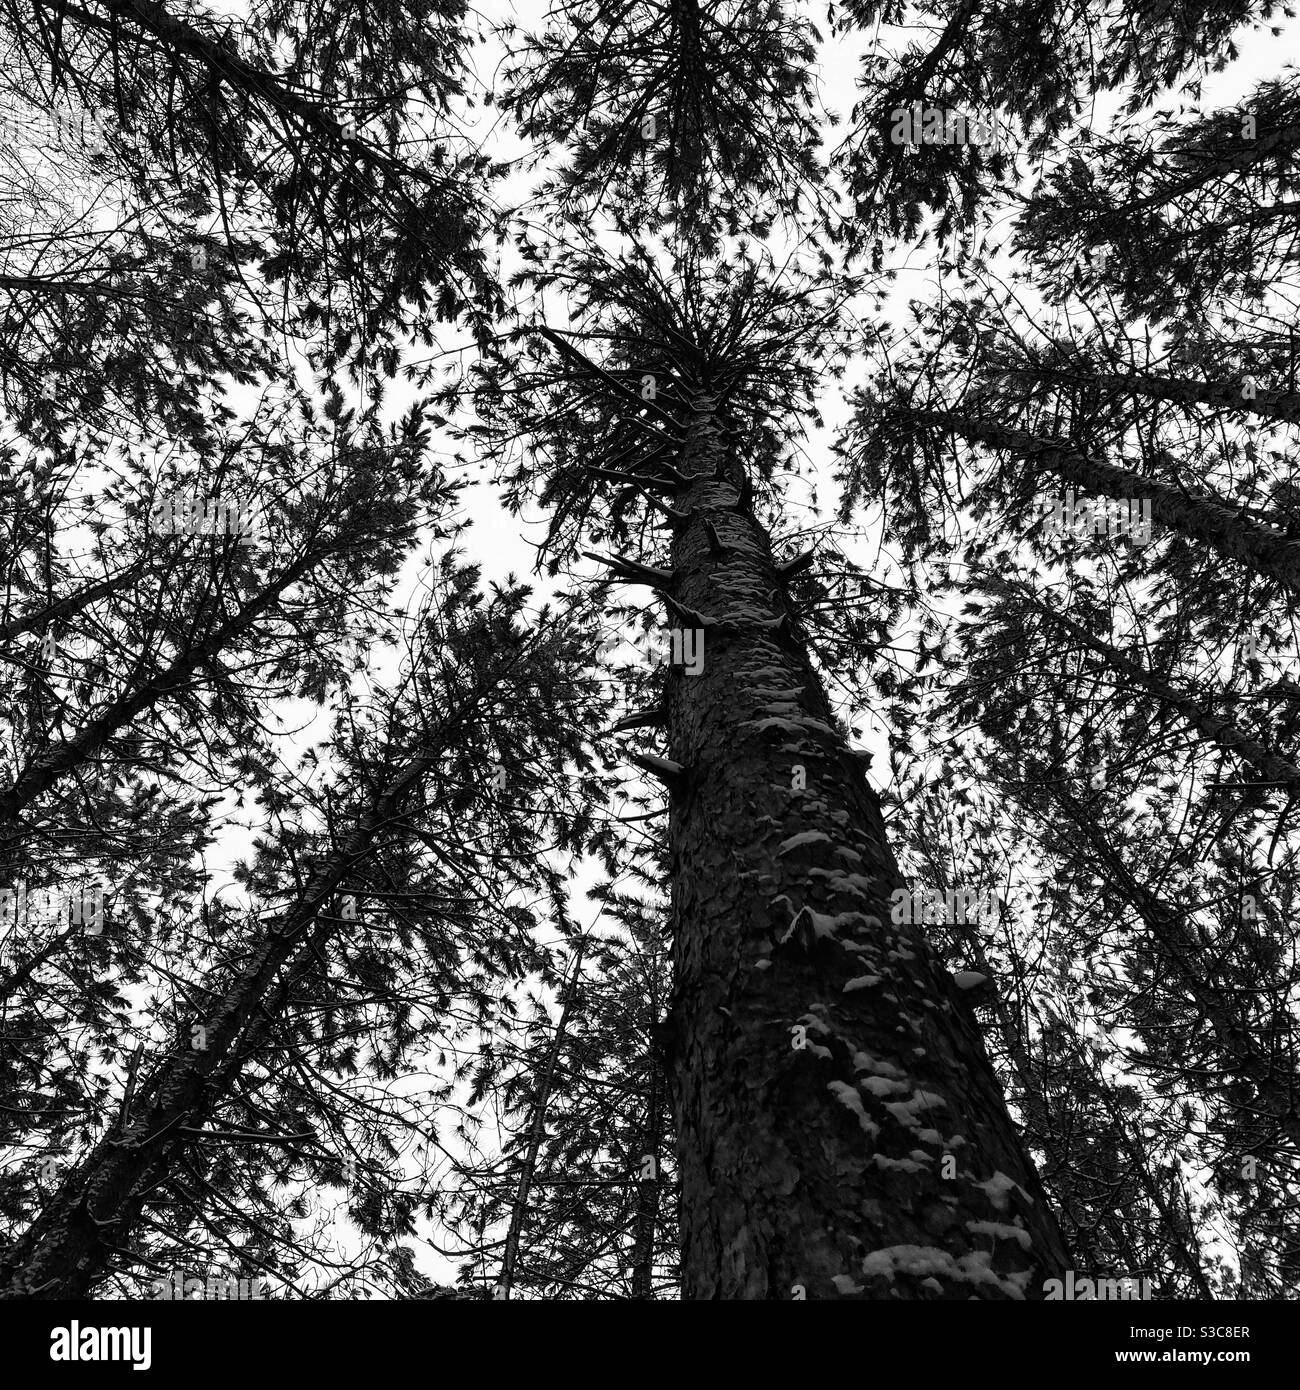 Vue sur les arbres à feuilles persistantes dans une forêt enneigée Banque D'Images